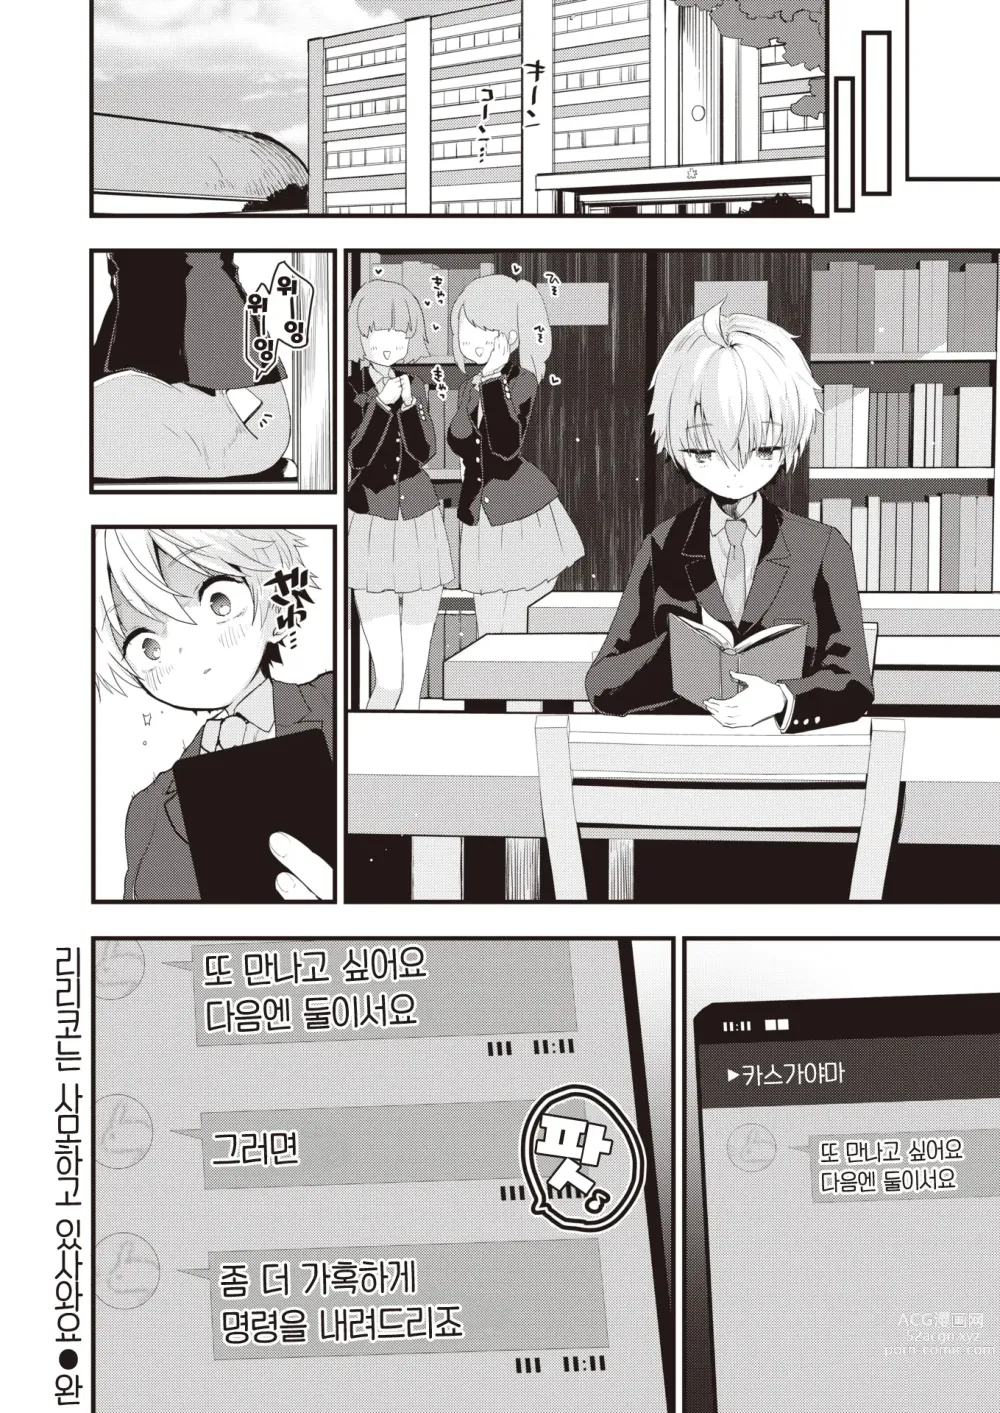 Page 25 of manga 리리코는 사모하고 있사와요